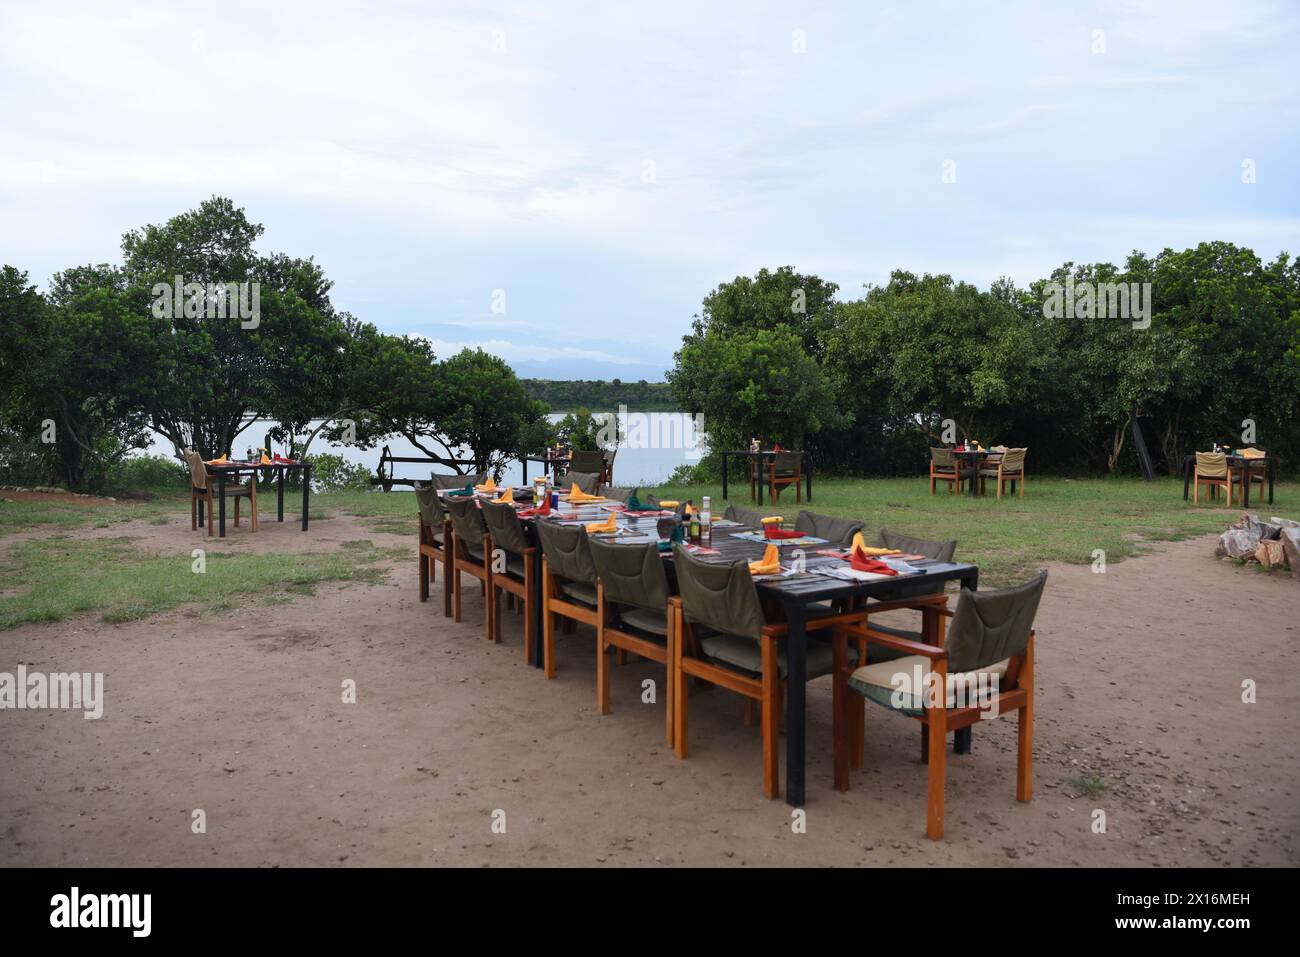 Sous la canopée de la végétation luxuriante du parc national de Kibale, des tables élégamment agencées attendent les convives, ornées de chandelles scintillantes et d'une ambiance vibrante Banque D'Images